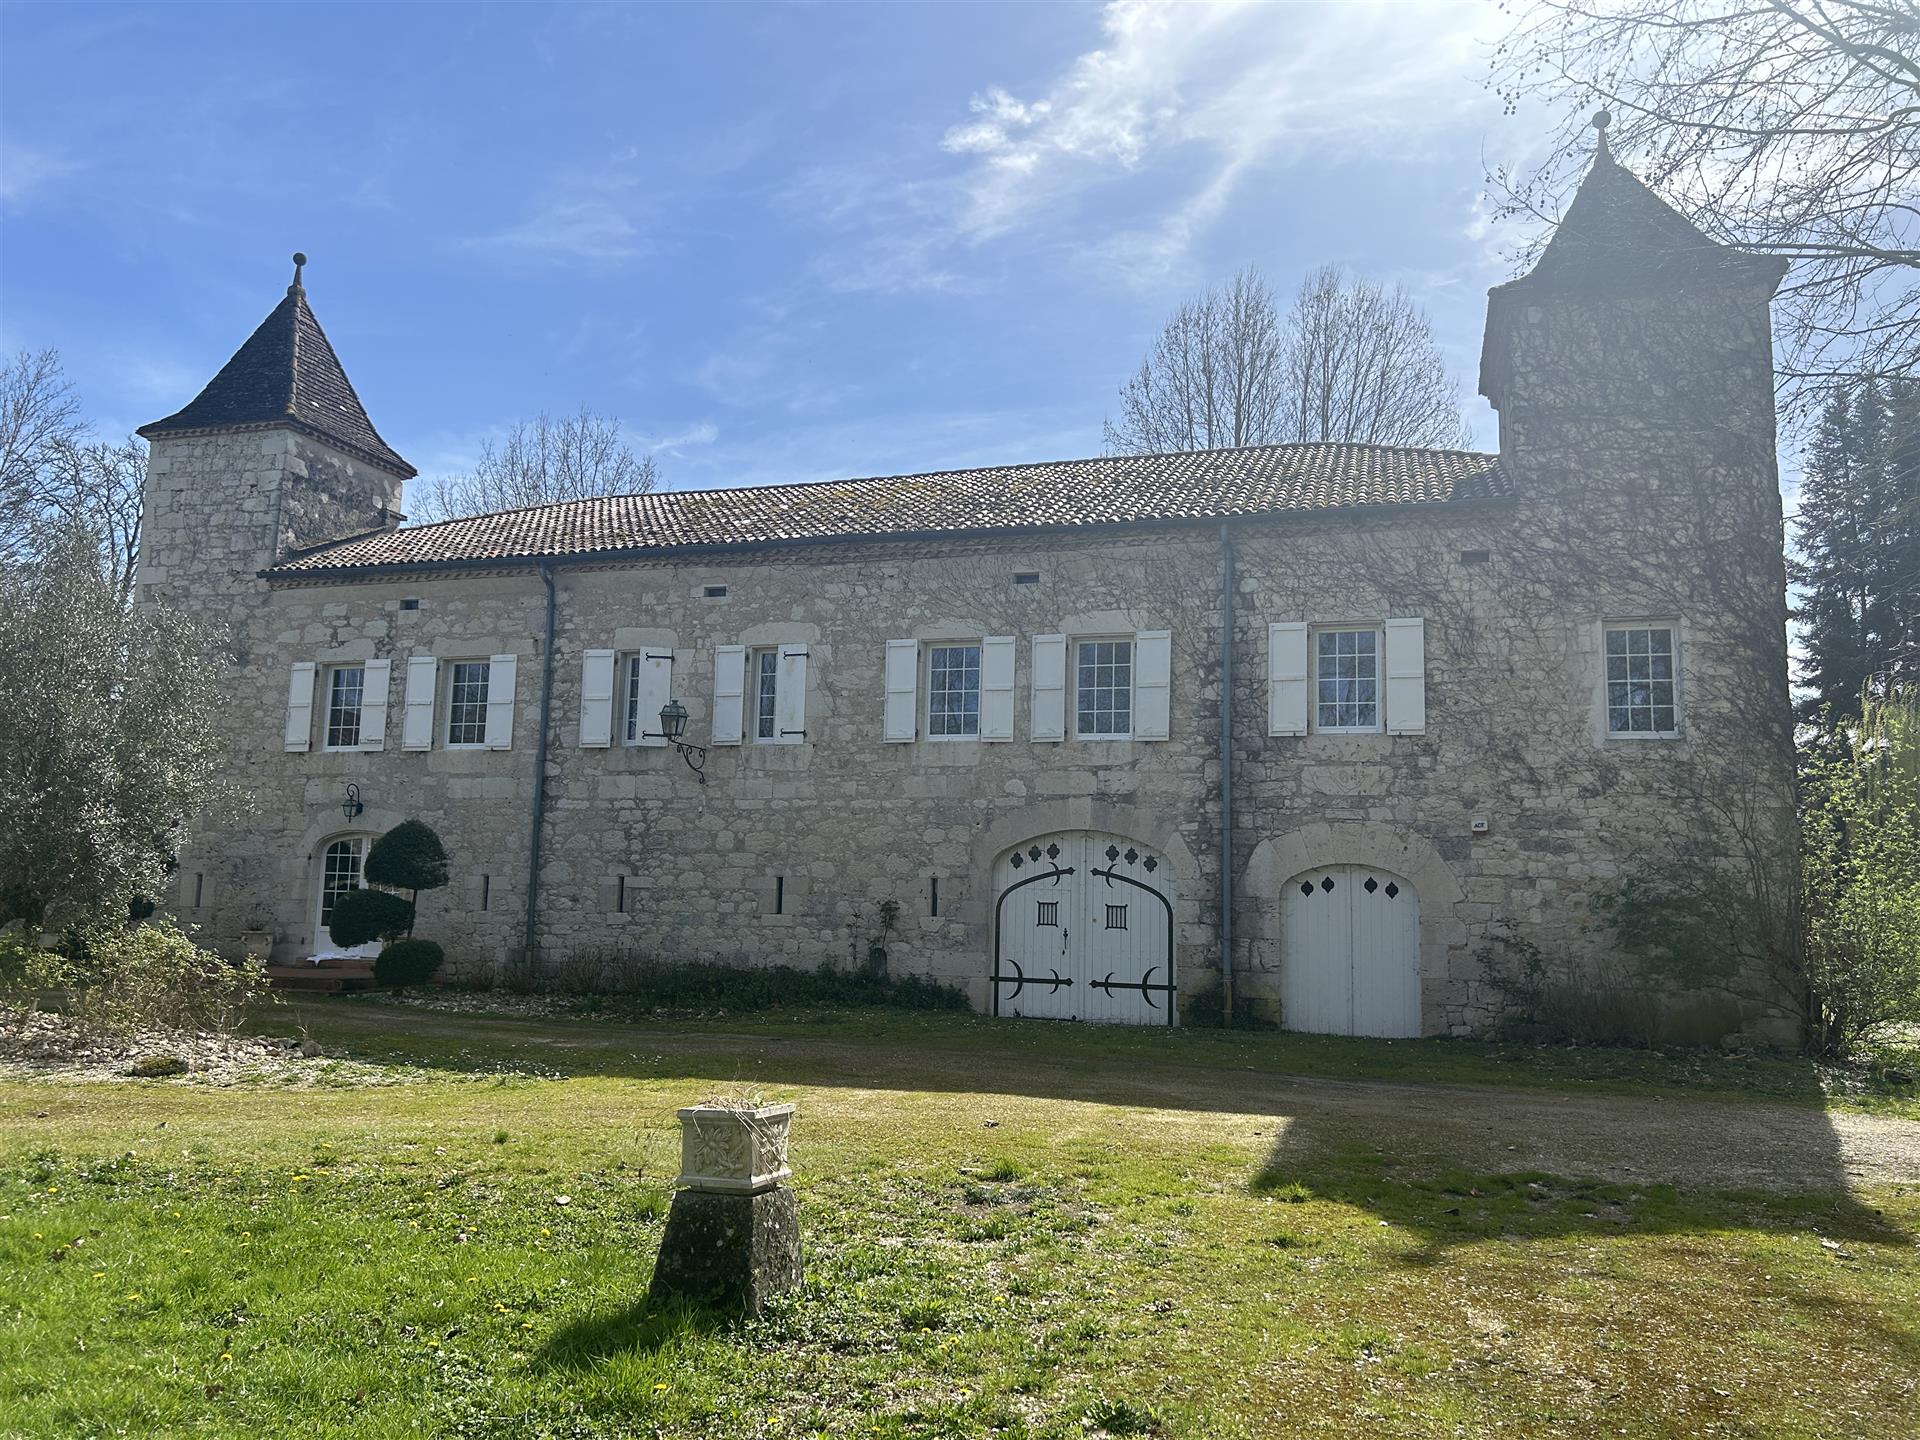 Magnifique Chateau XVIIe - Chambres Hotes - Piscine Interieure